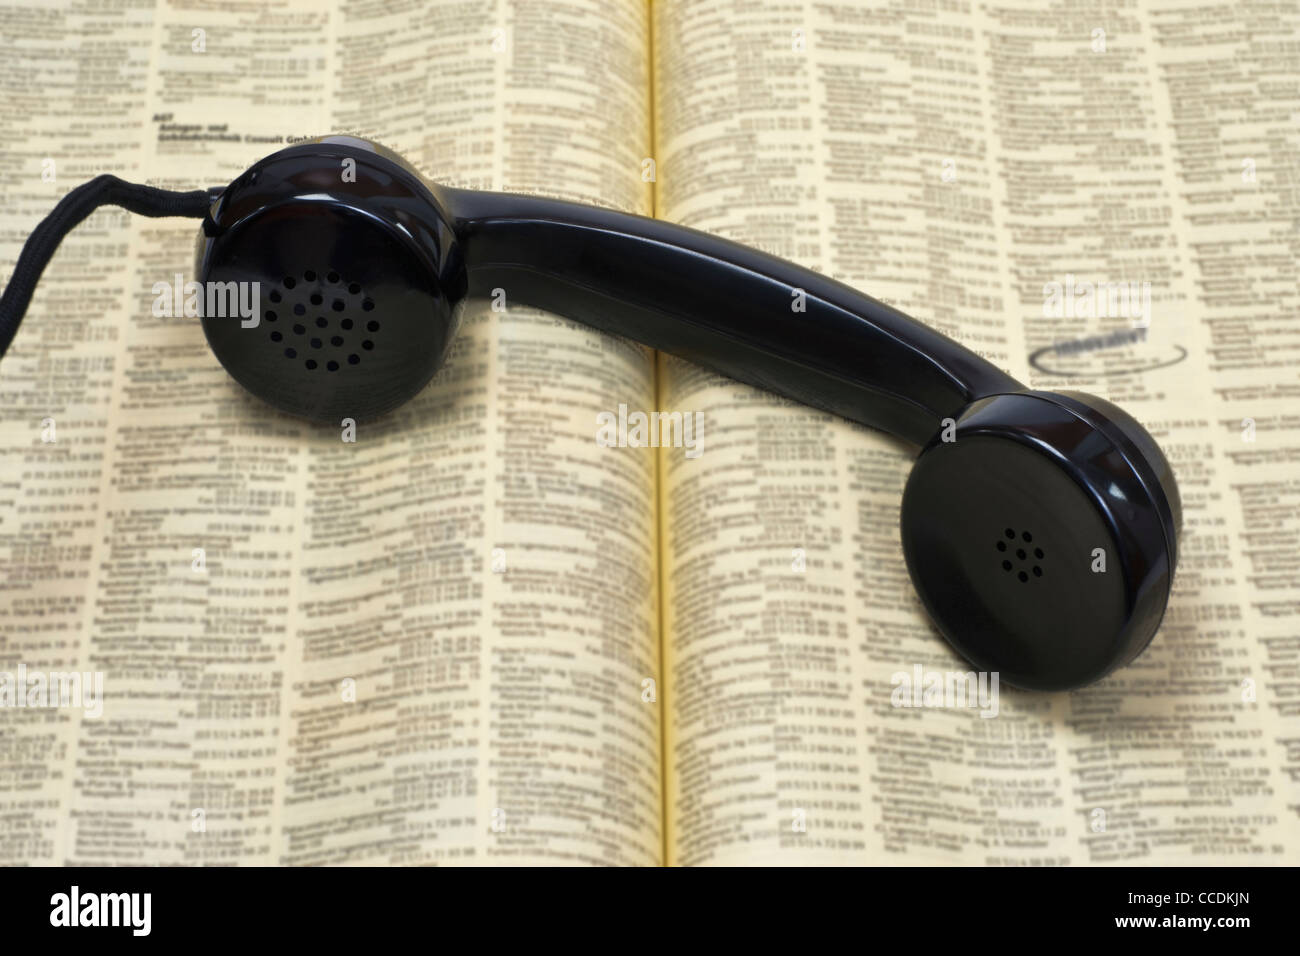 Photo détail d'un vieux téléphone récepteur, couché sur un annuaire téléphonique Banque D'Images